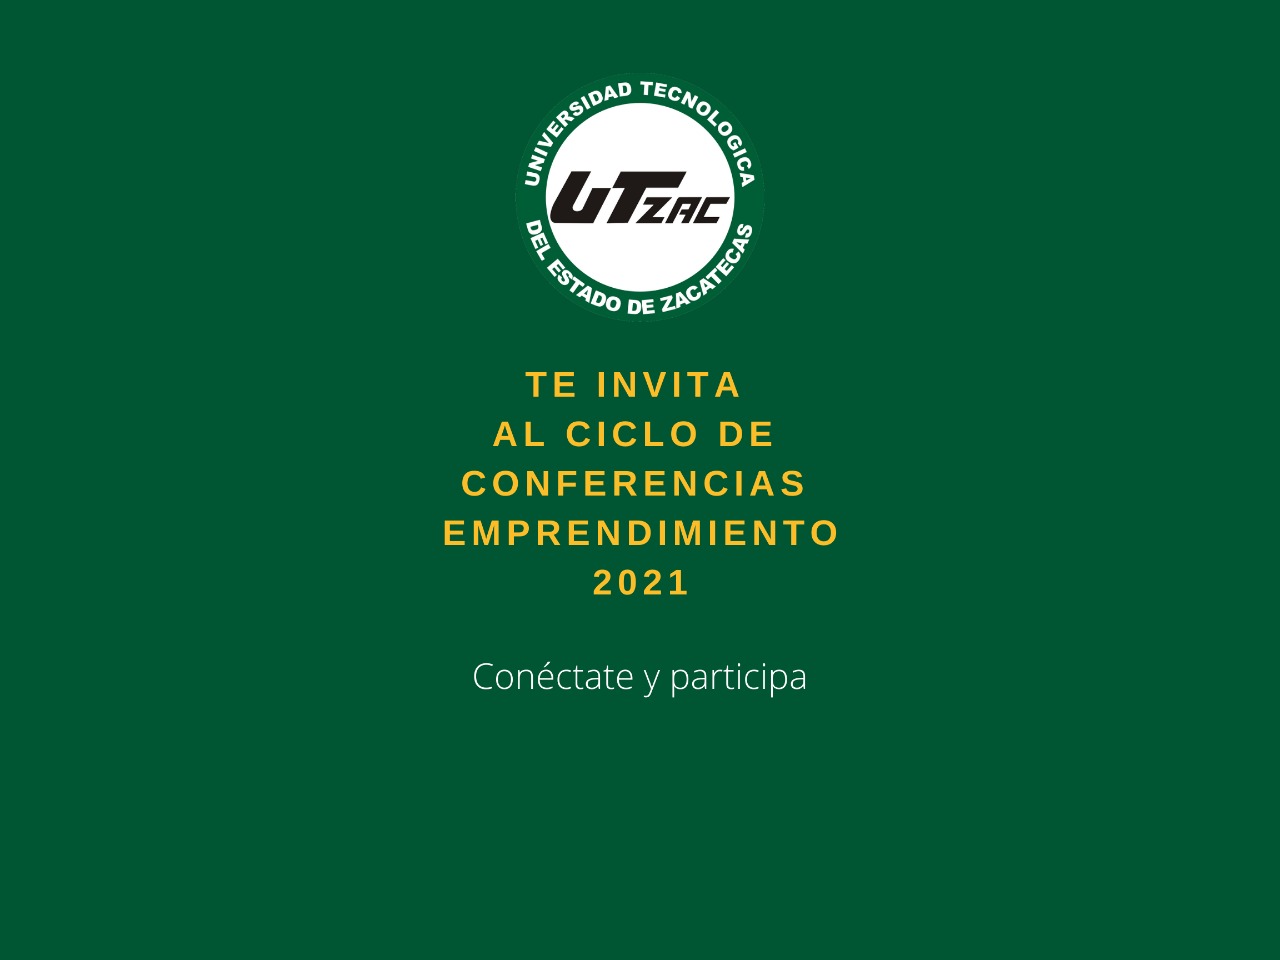 (Español) Conéctate y participa en nuestra conferencia de emprendimiento y conoce más sobre la gestión integral de residuos.